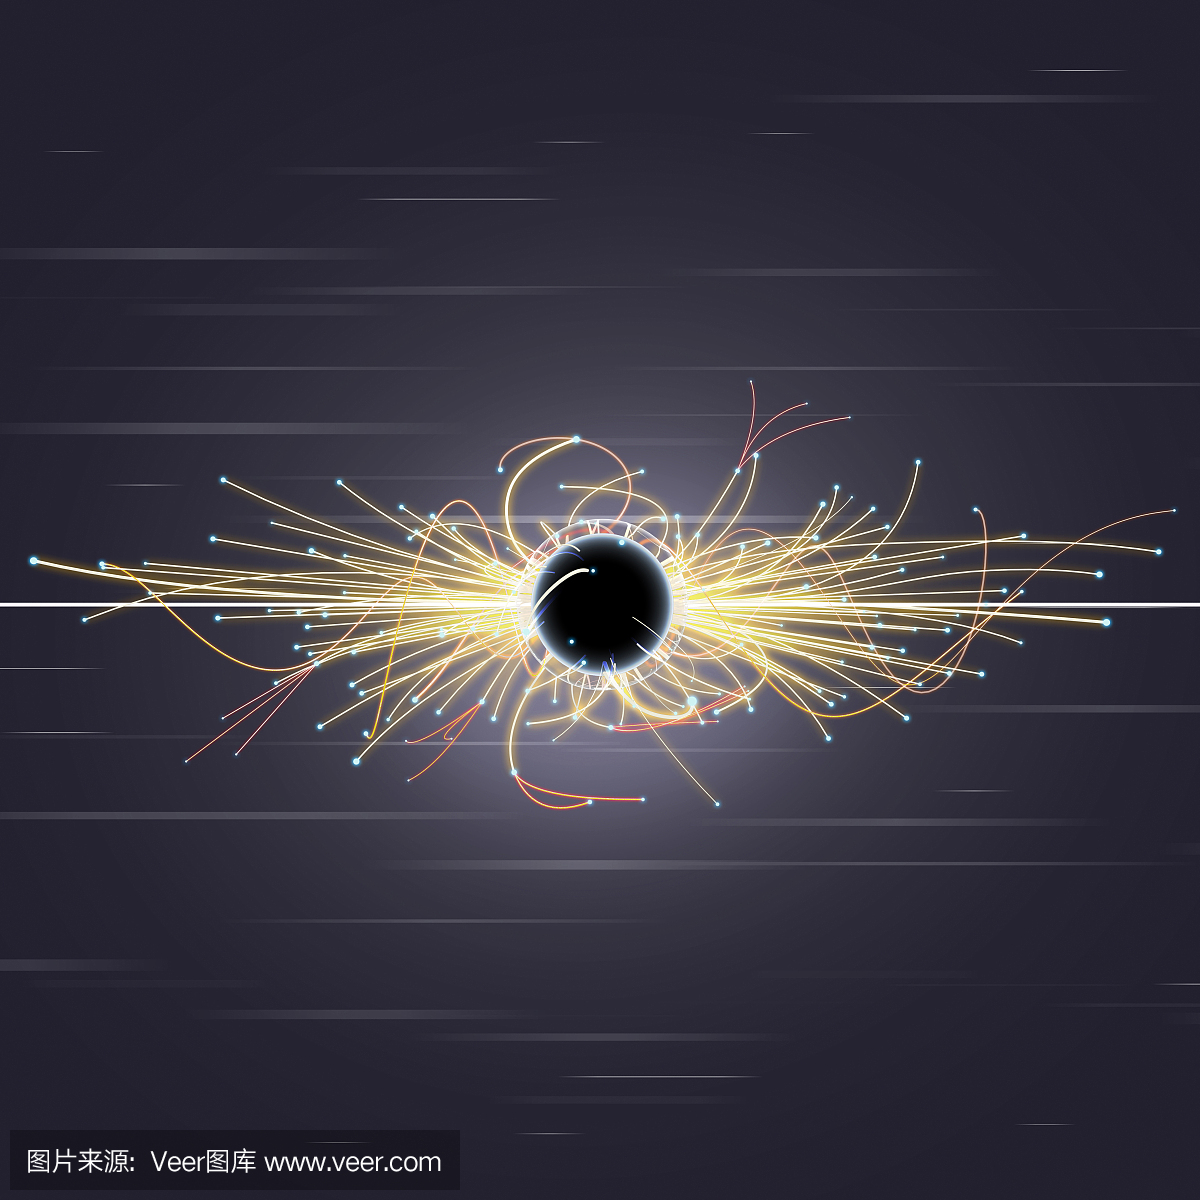 LHC中的粒子碰撞和黑洞(大型强子对撞机)